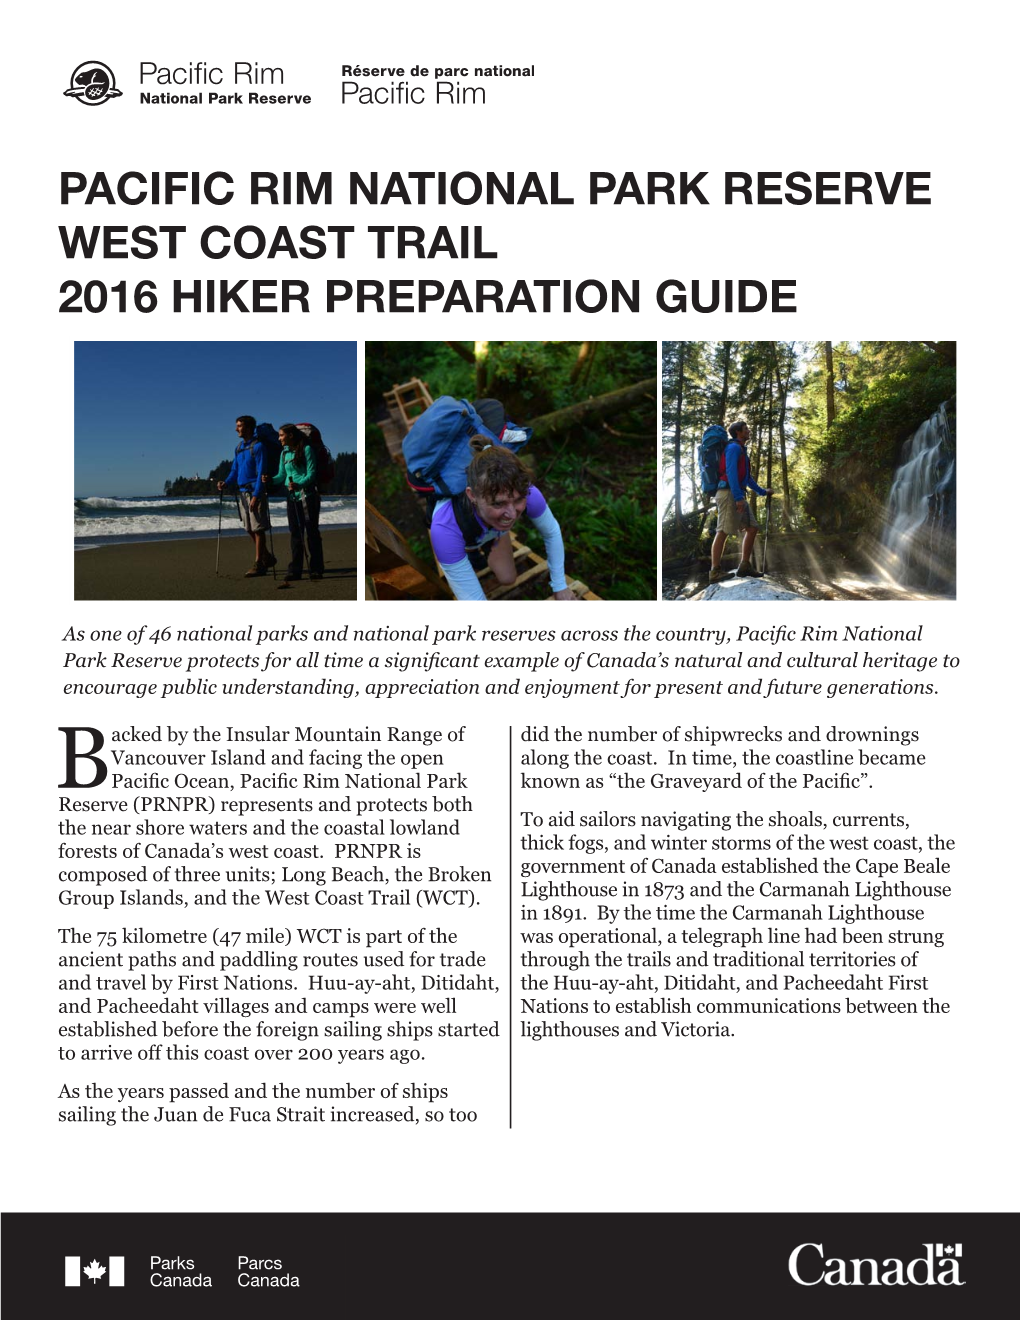 Pacific Rim National Park Reserve West Coast Trail 2016 Hiker Preparation Guide